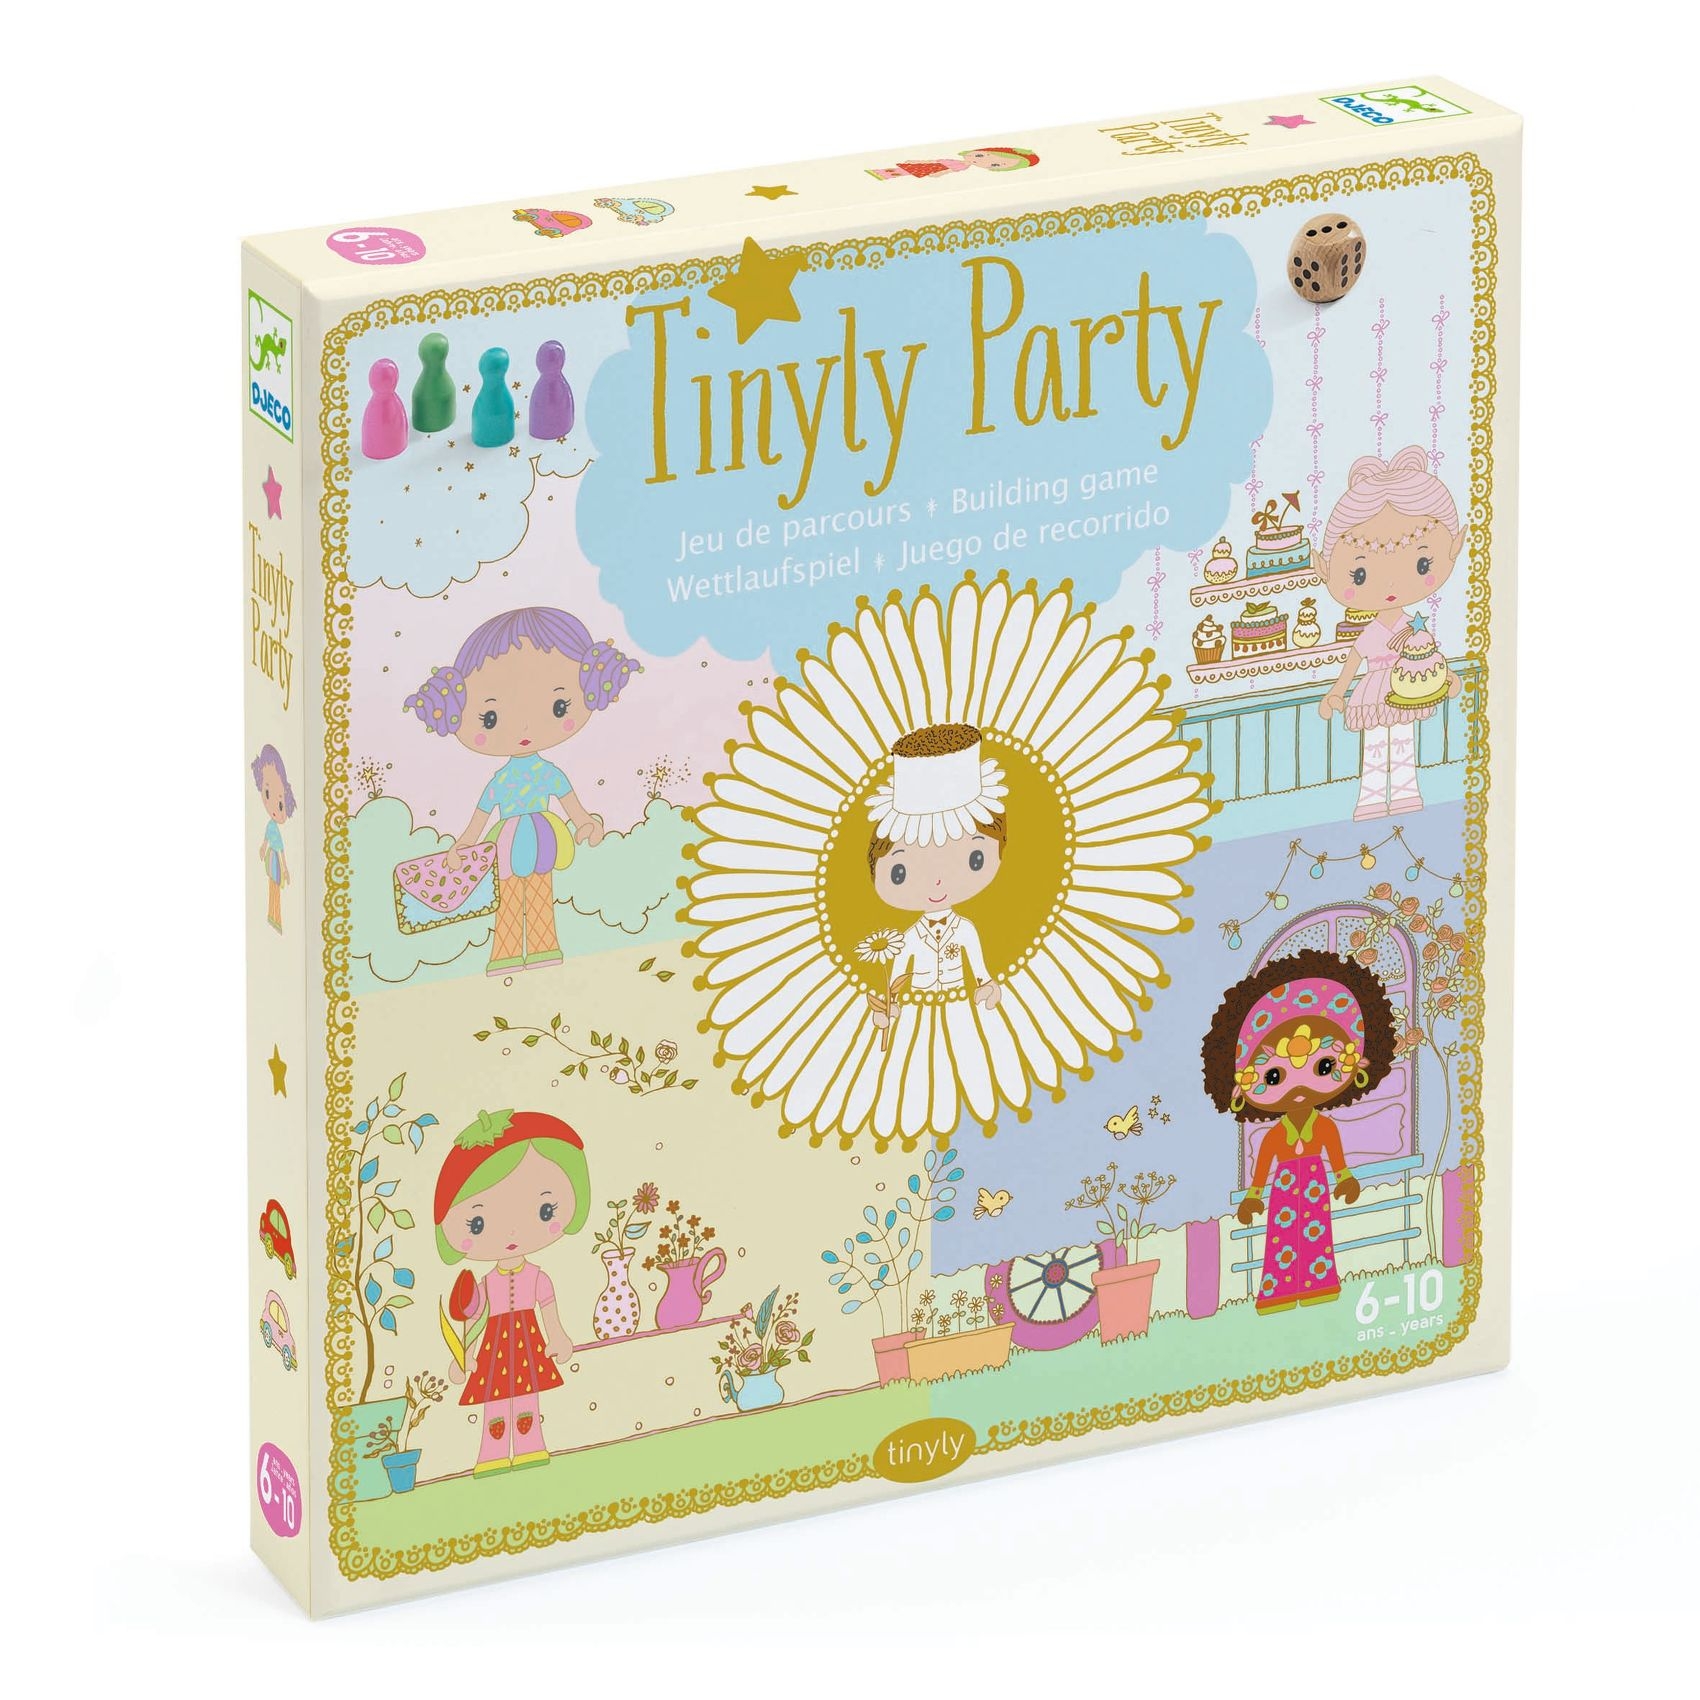 Álomvilág figurák - Álomvilág party társasjáték - Tinyly party - 0